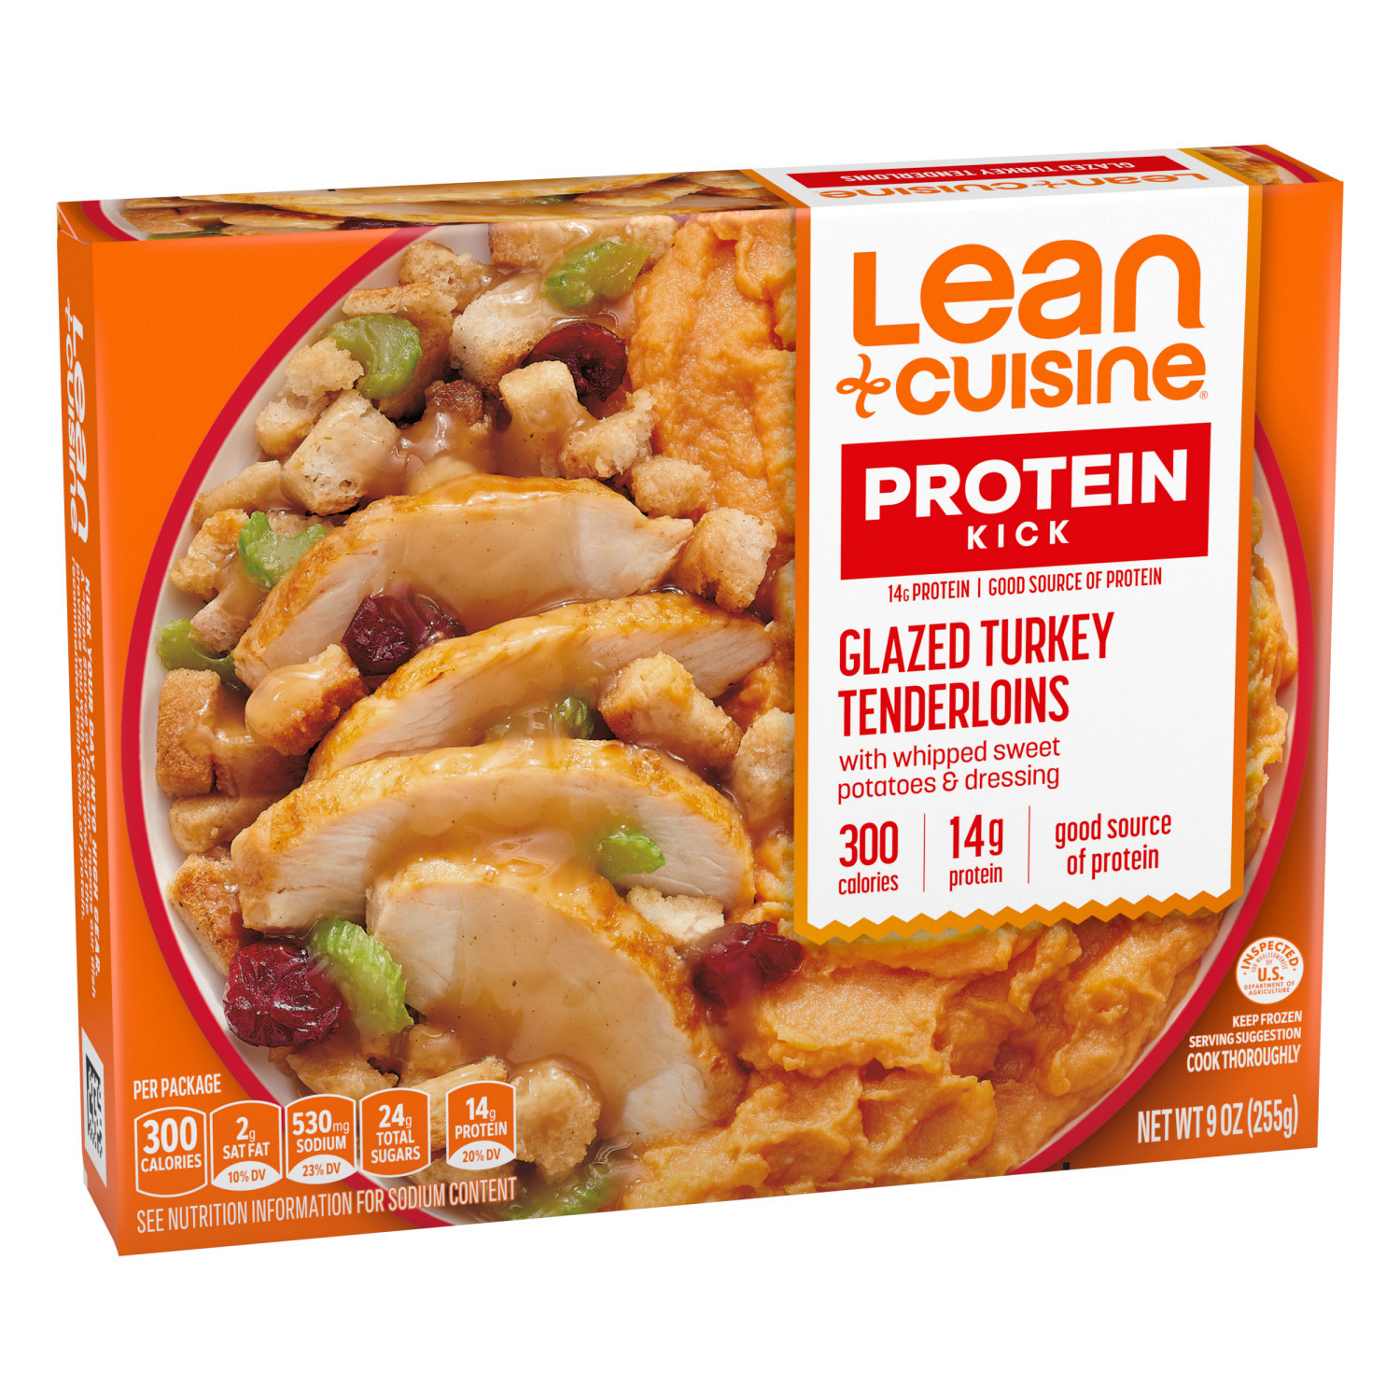 Lean Cuisine 14g Protein Glazed Turkey Tenderloins Frozen Meal; image 4 of 8